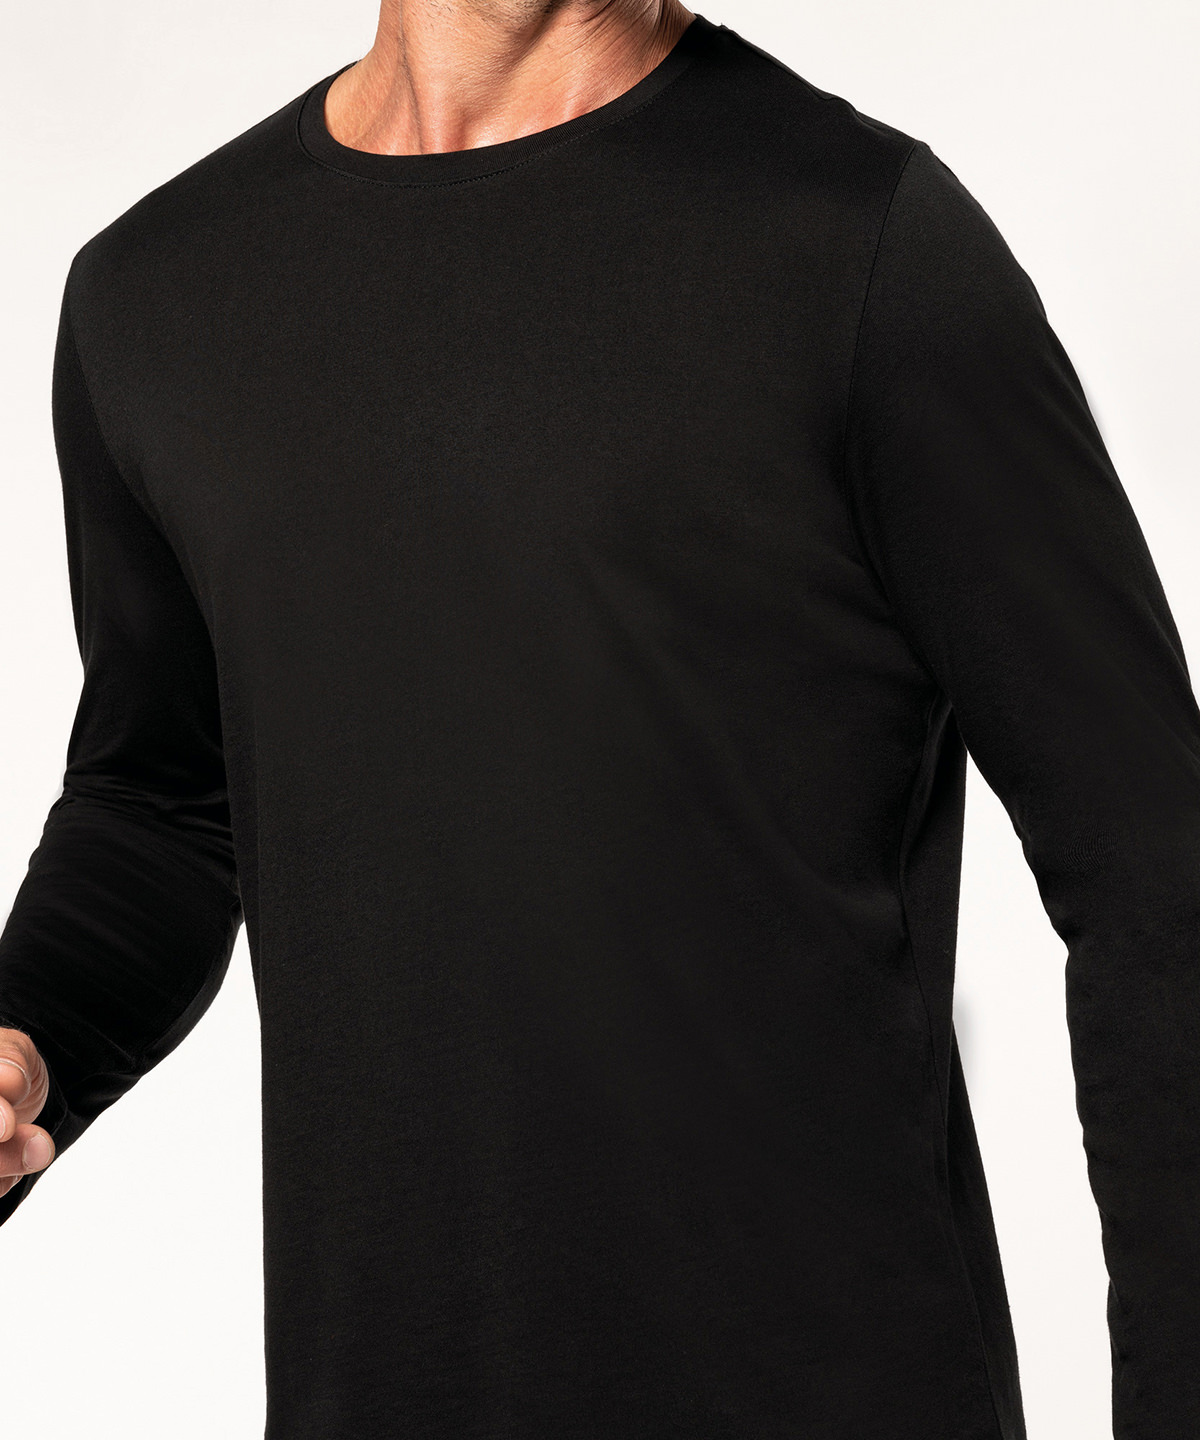 Men's long-sleeved crew neck T-shirt